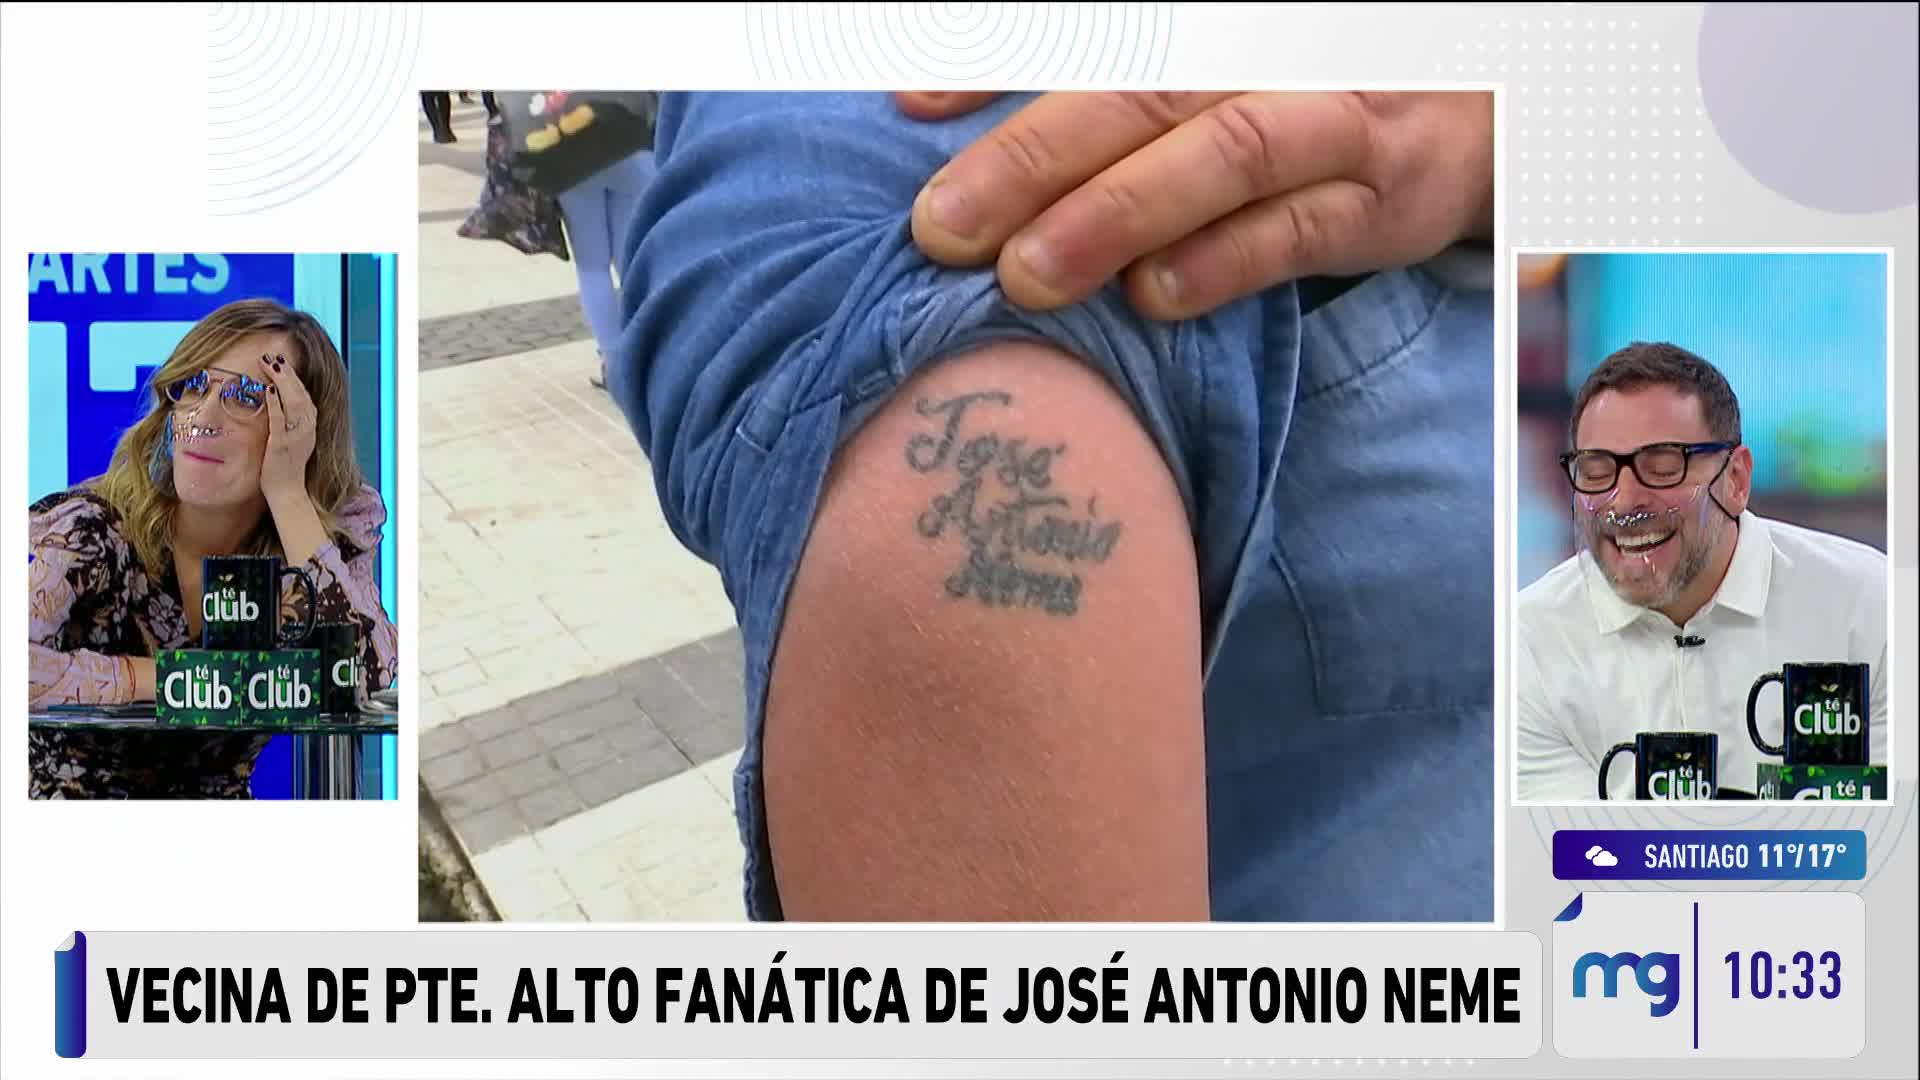 Angélica mostrando su tatuaje 